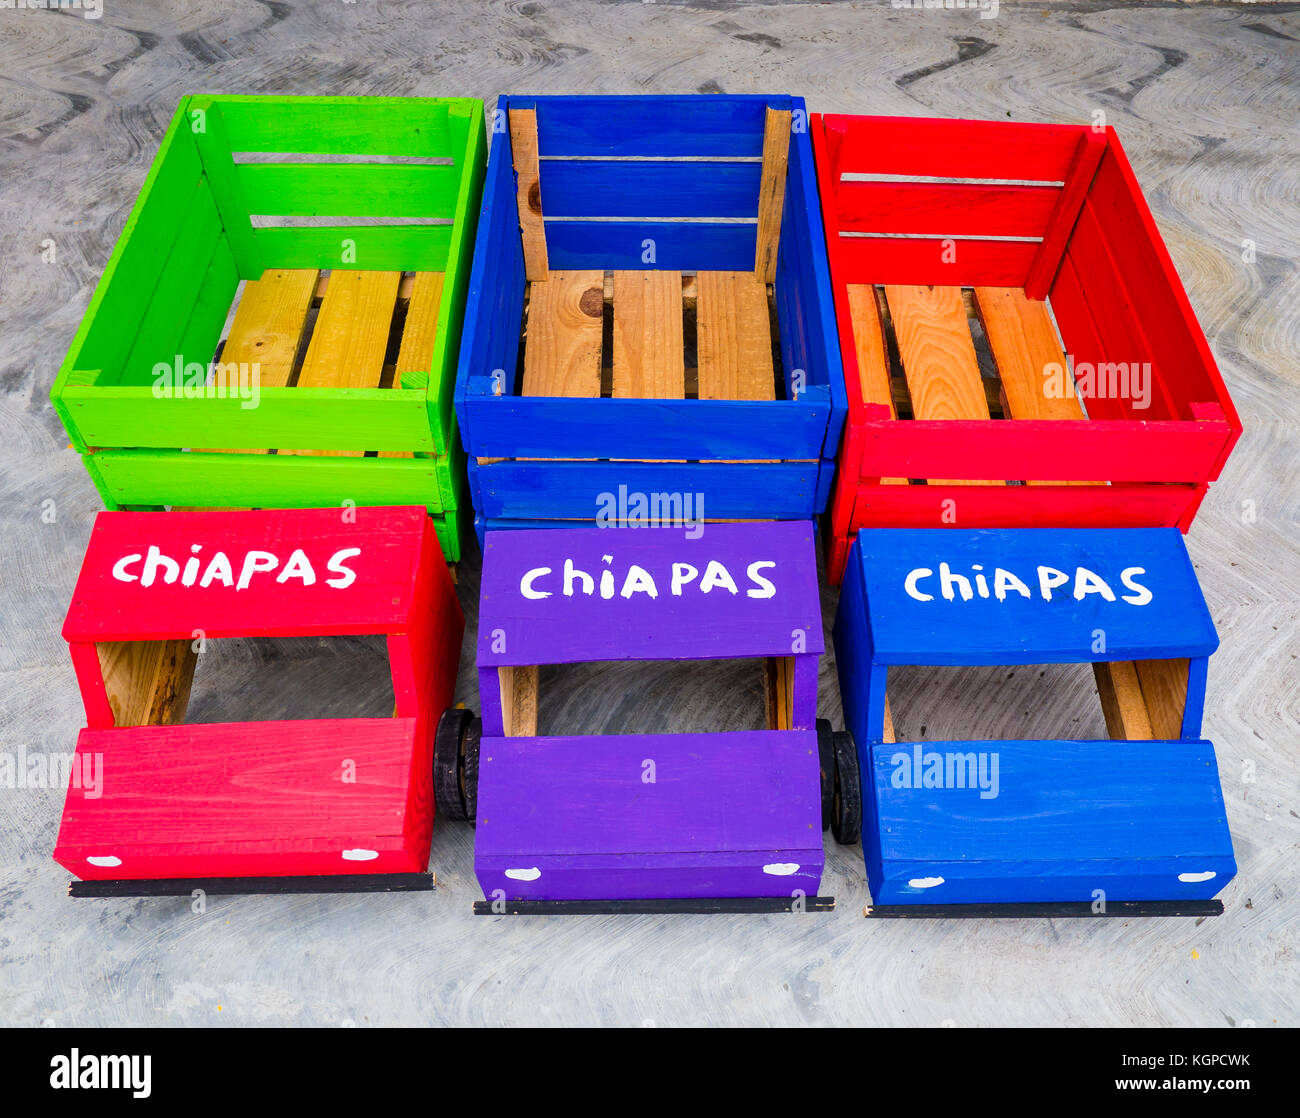 Camions jouets mexicaines colorées avec l'inscription 'Chiapas' Banque D'Images